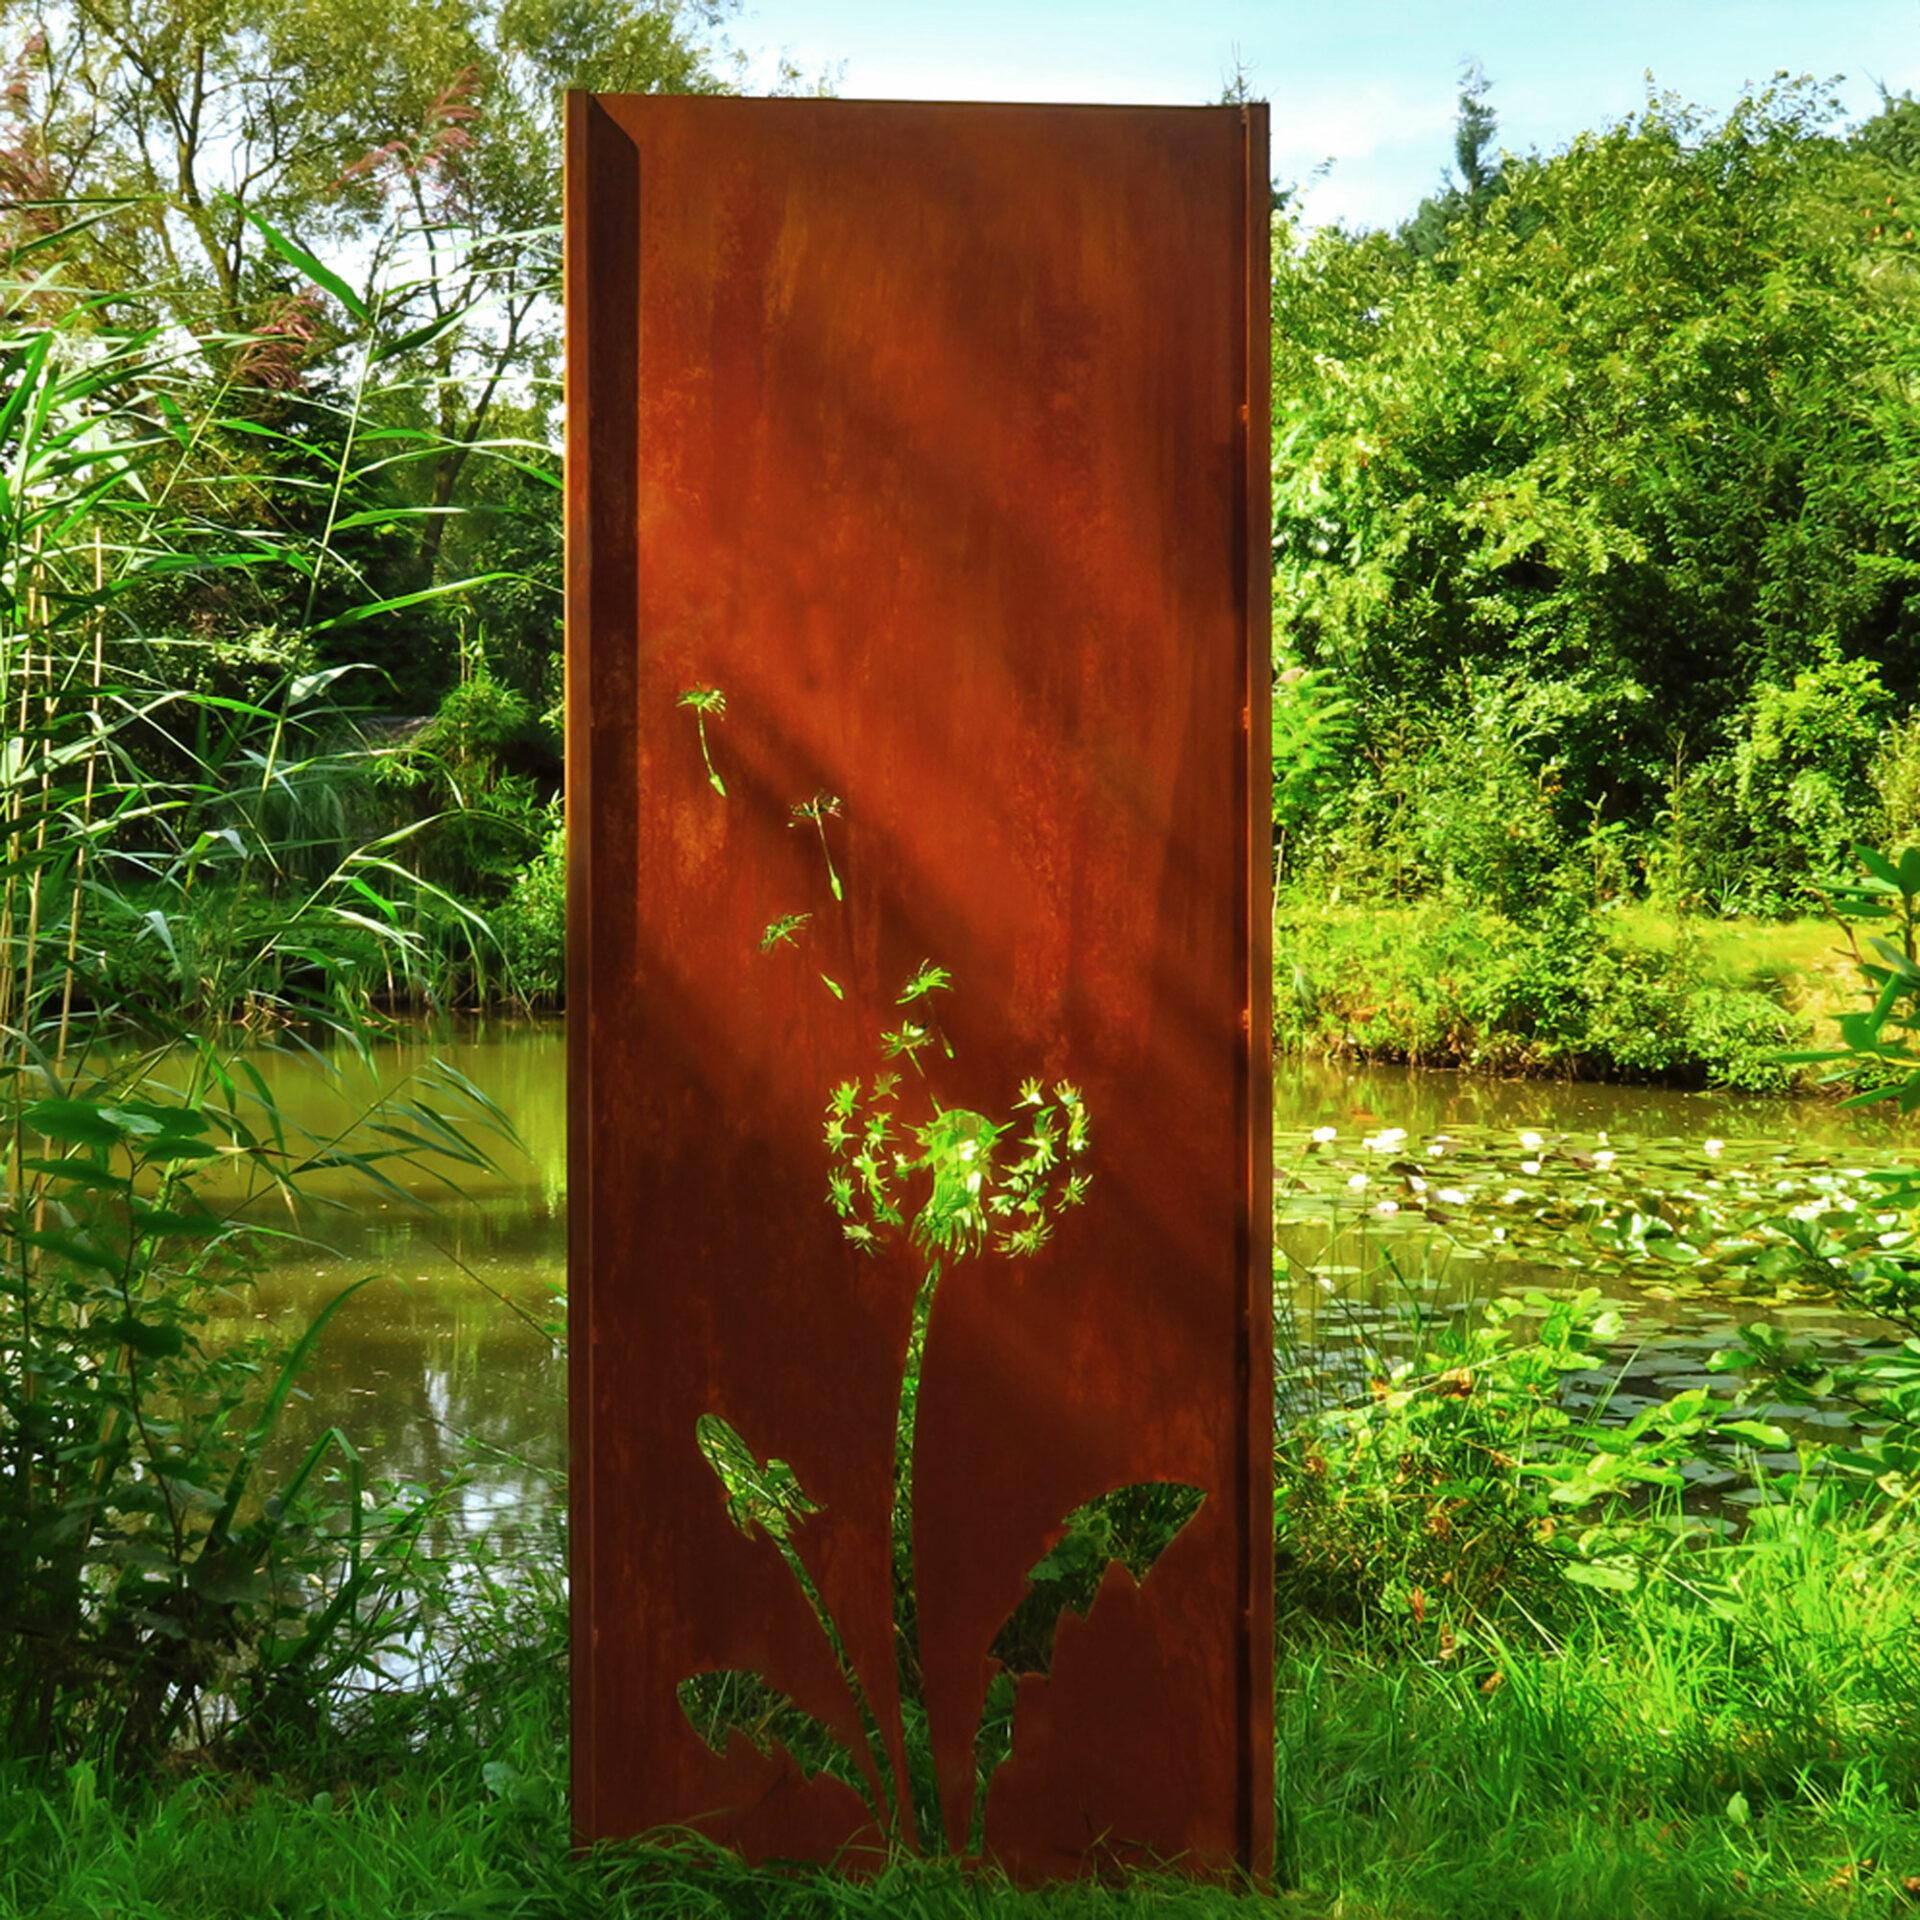 Gartenwand -Löwenzahn - Stahl - Außenverzierung - 75 × 195 cm – Mixed Media Art von Stefan Traloc